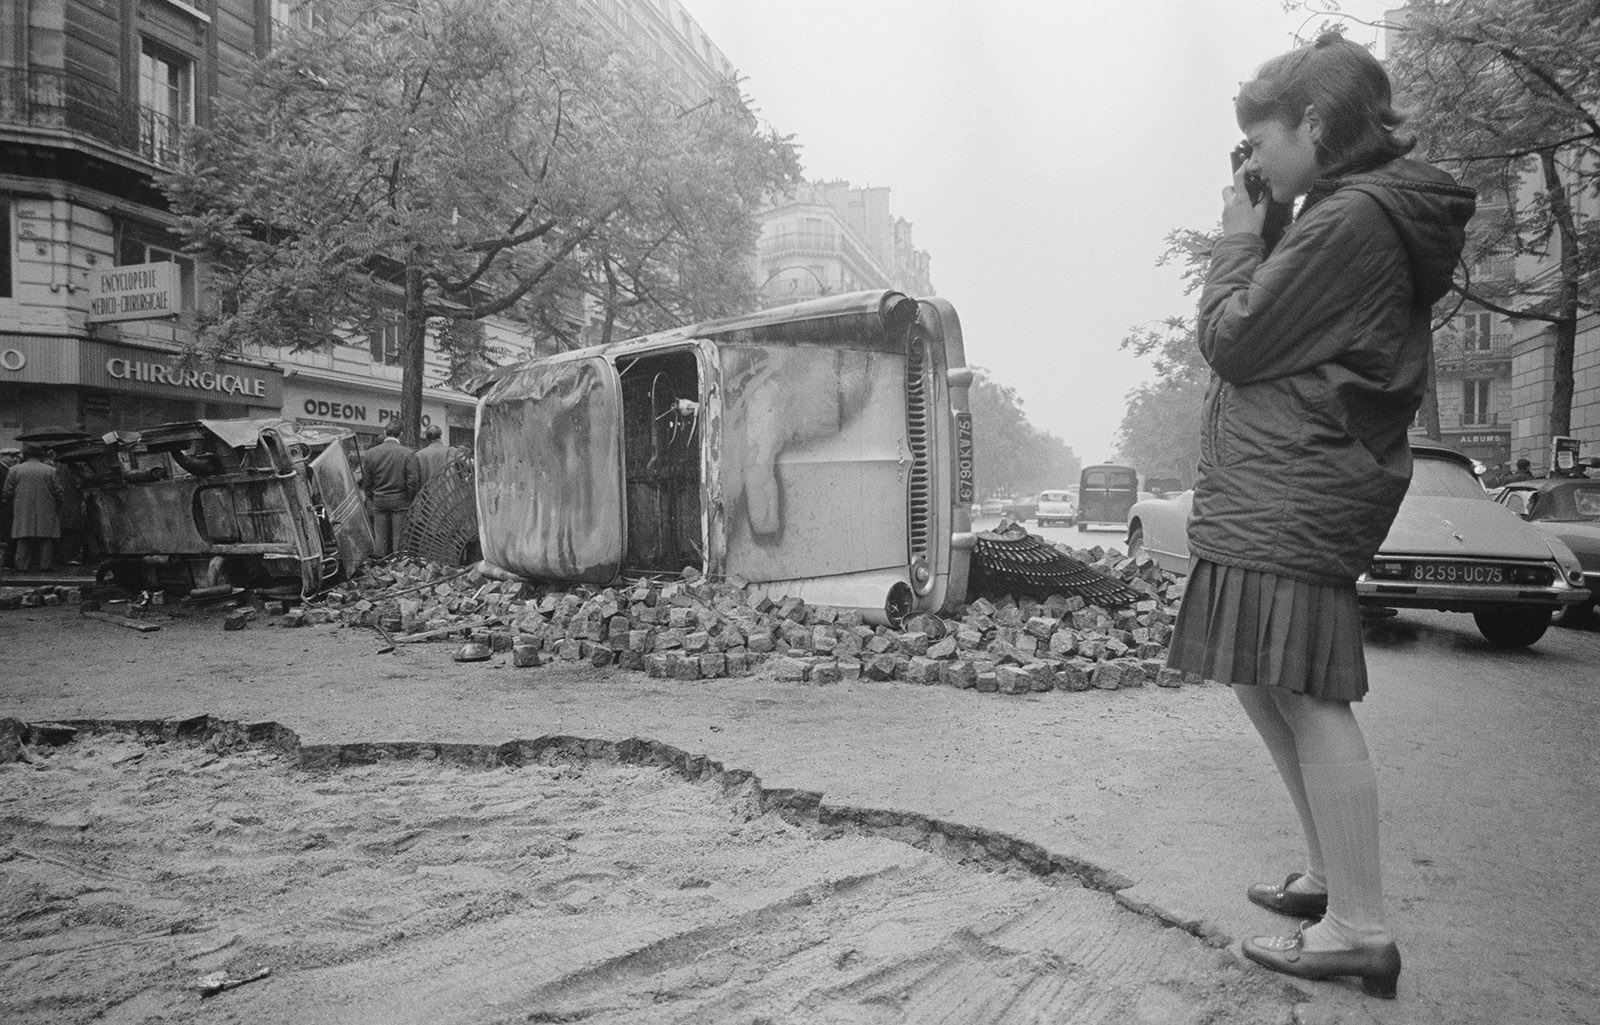 1968: Paris in May